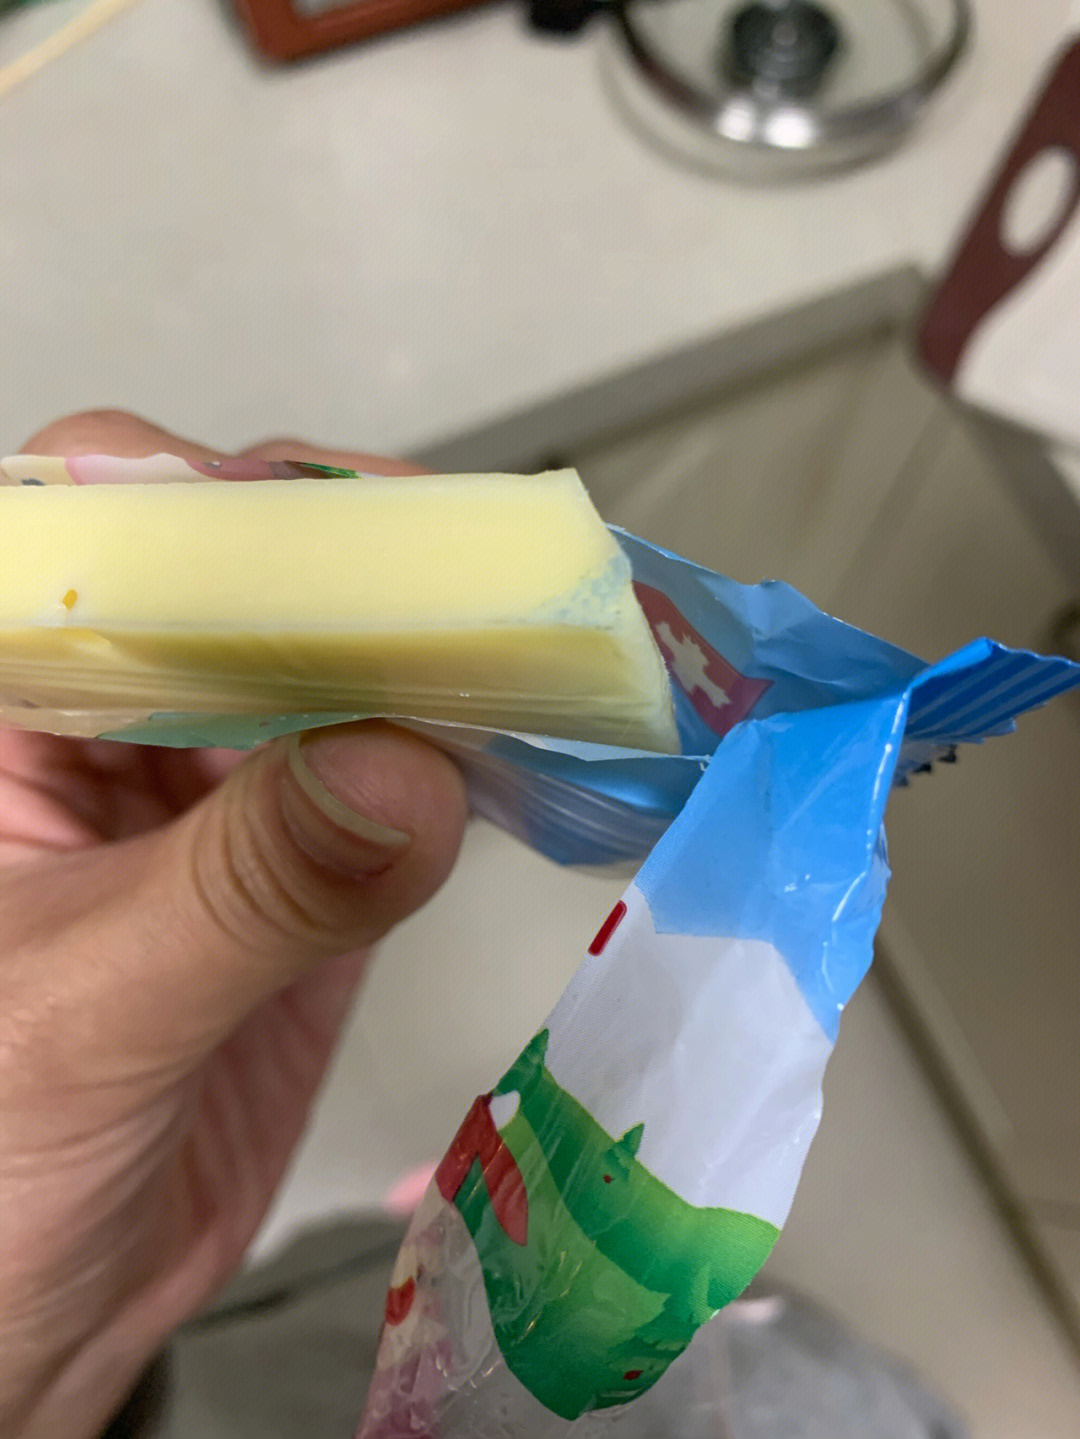 瑞慕卖发霉变质奶酪